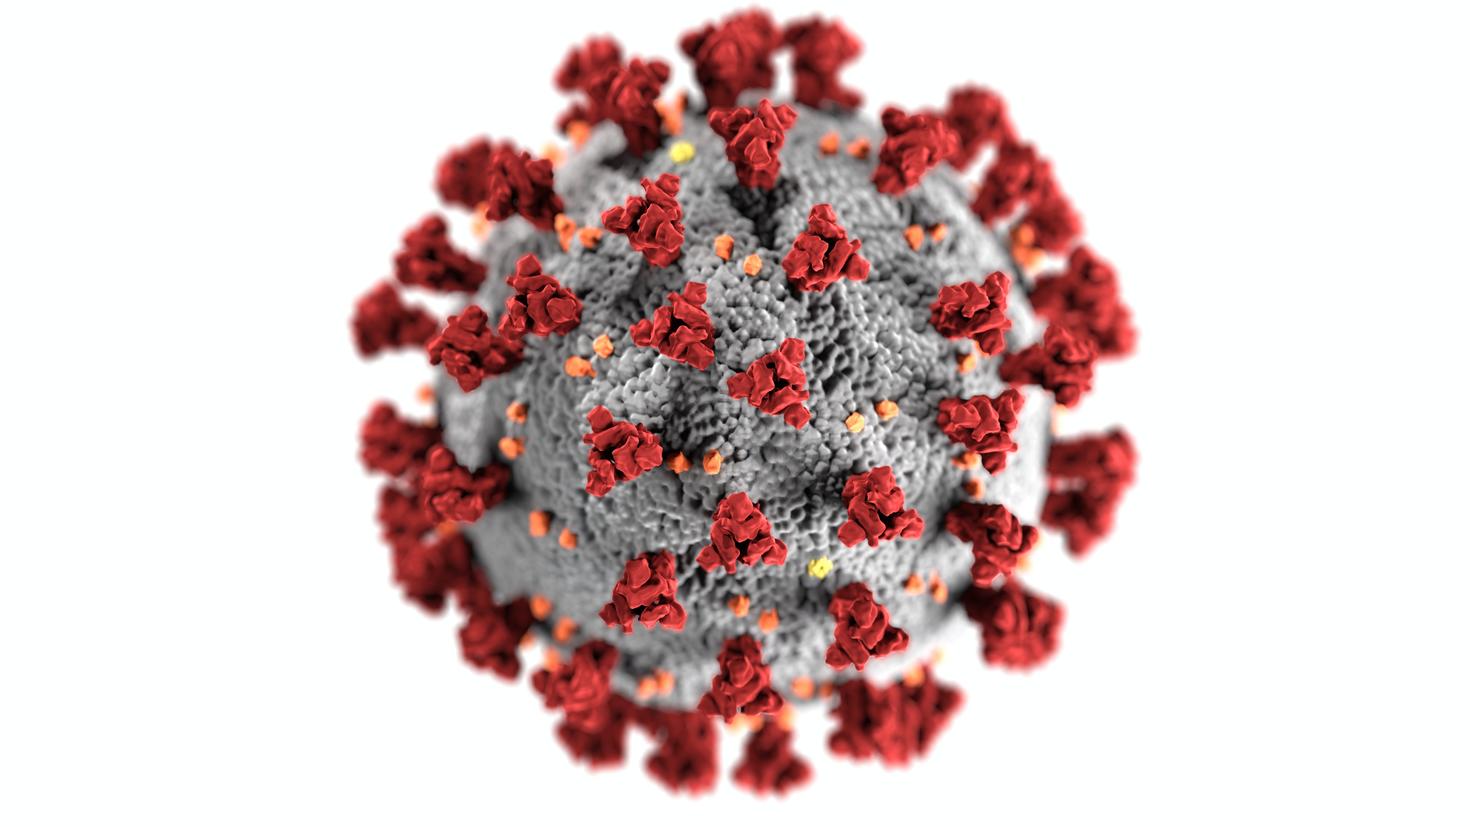 A virus seen up close